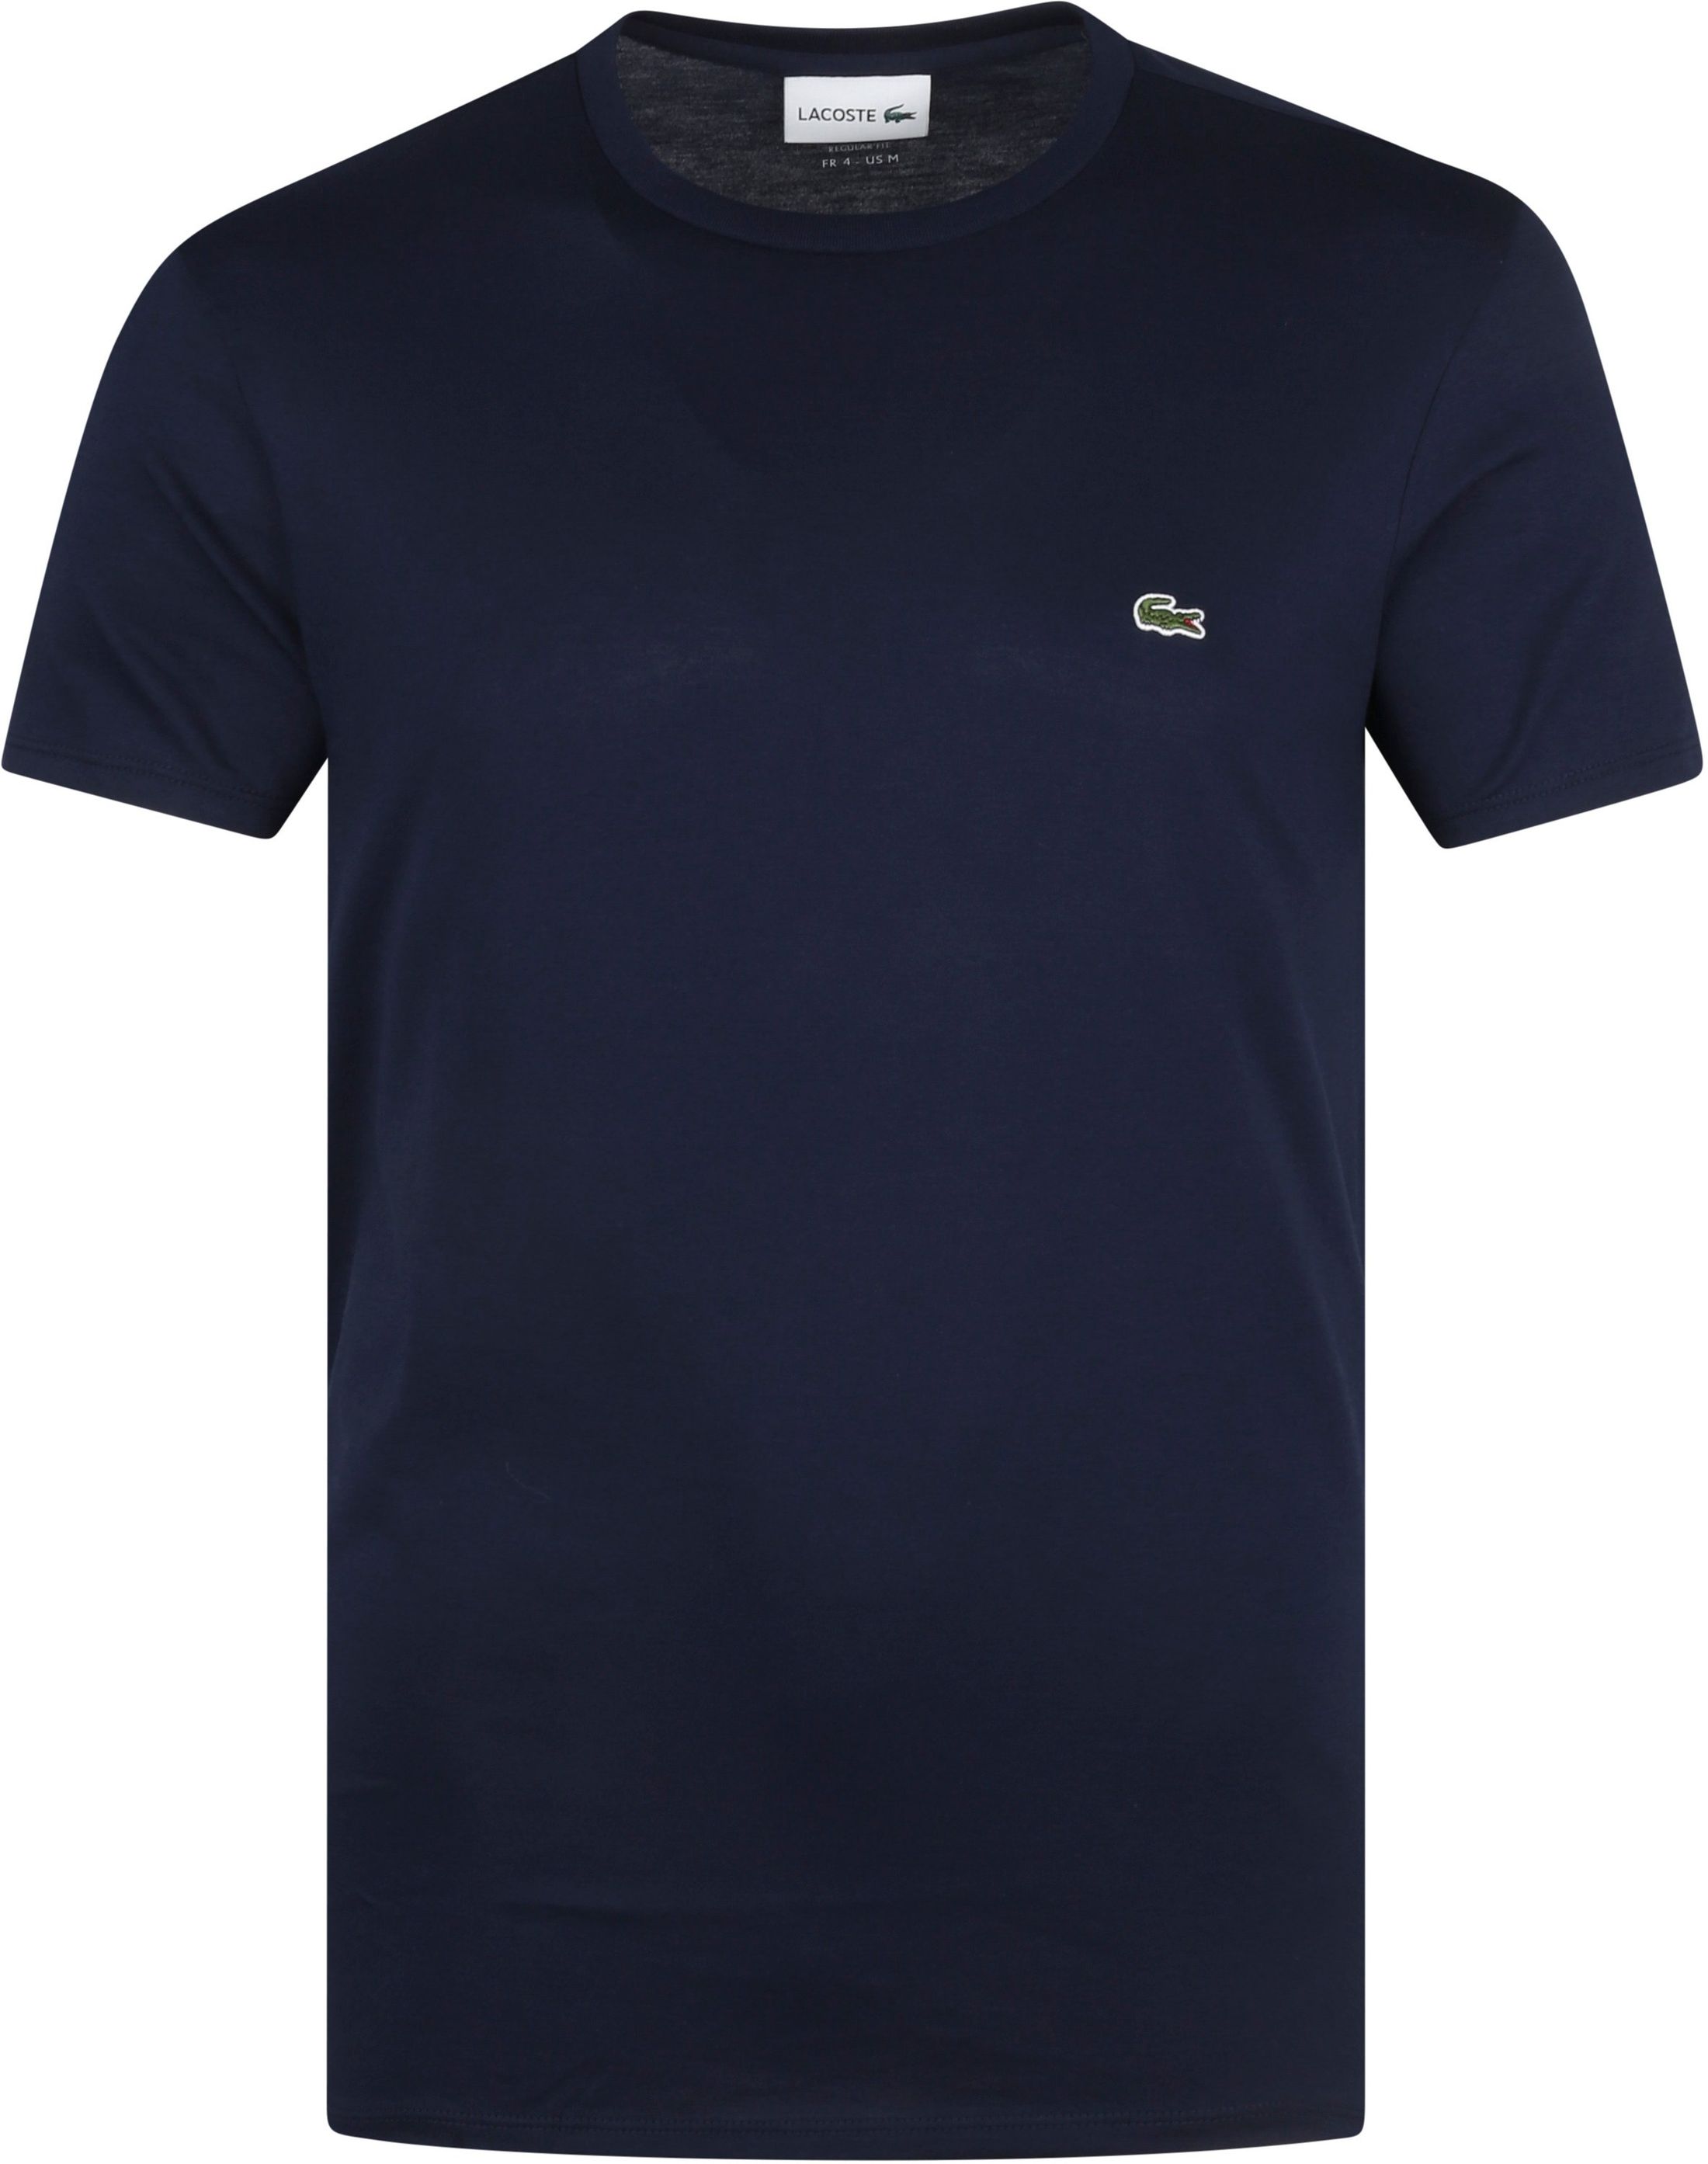 Lacoste T-Shirt Dark Blue Dark Blue size L